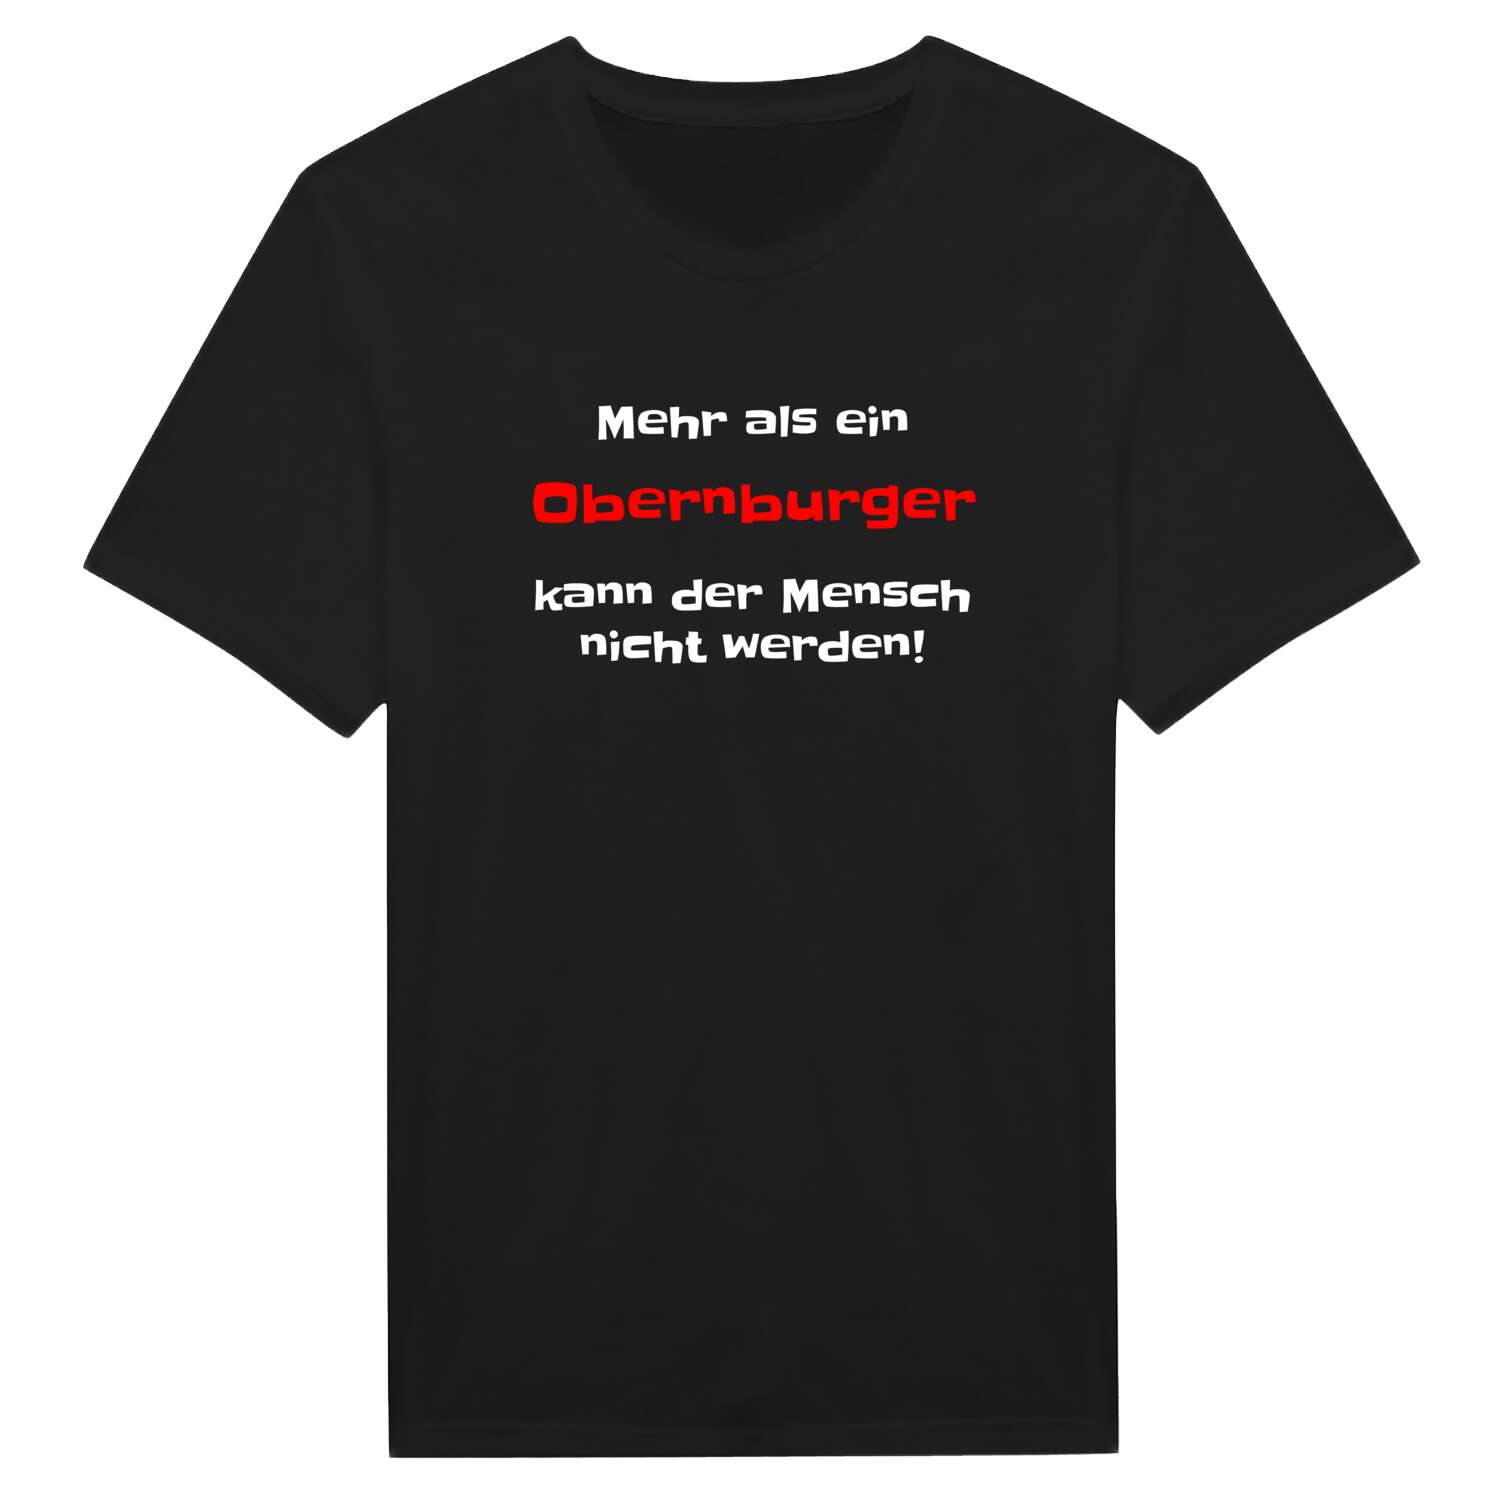 Obernburg T-Shirt »Mehr als ein«